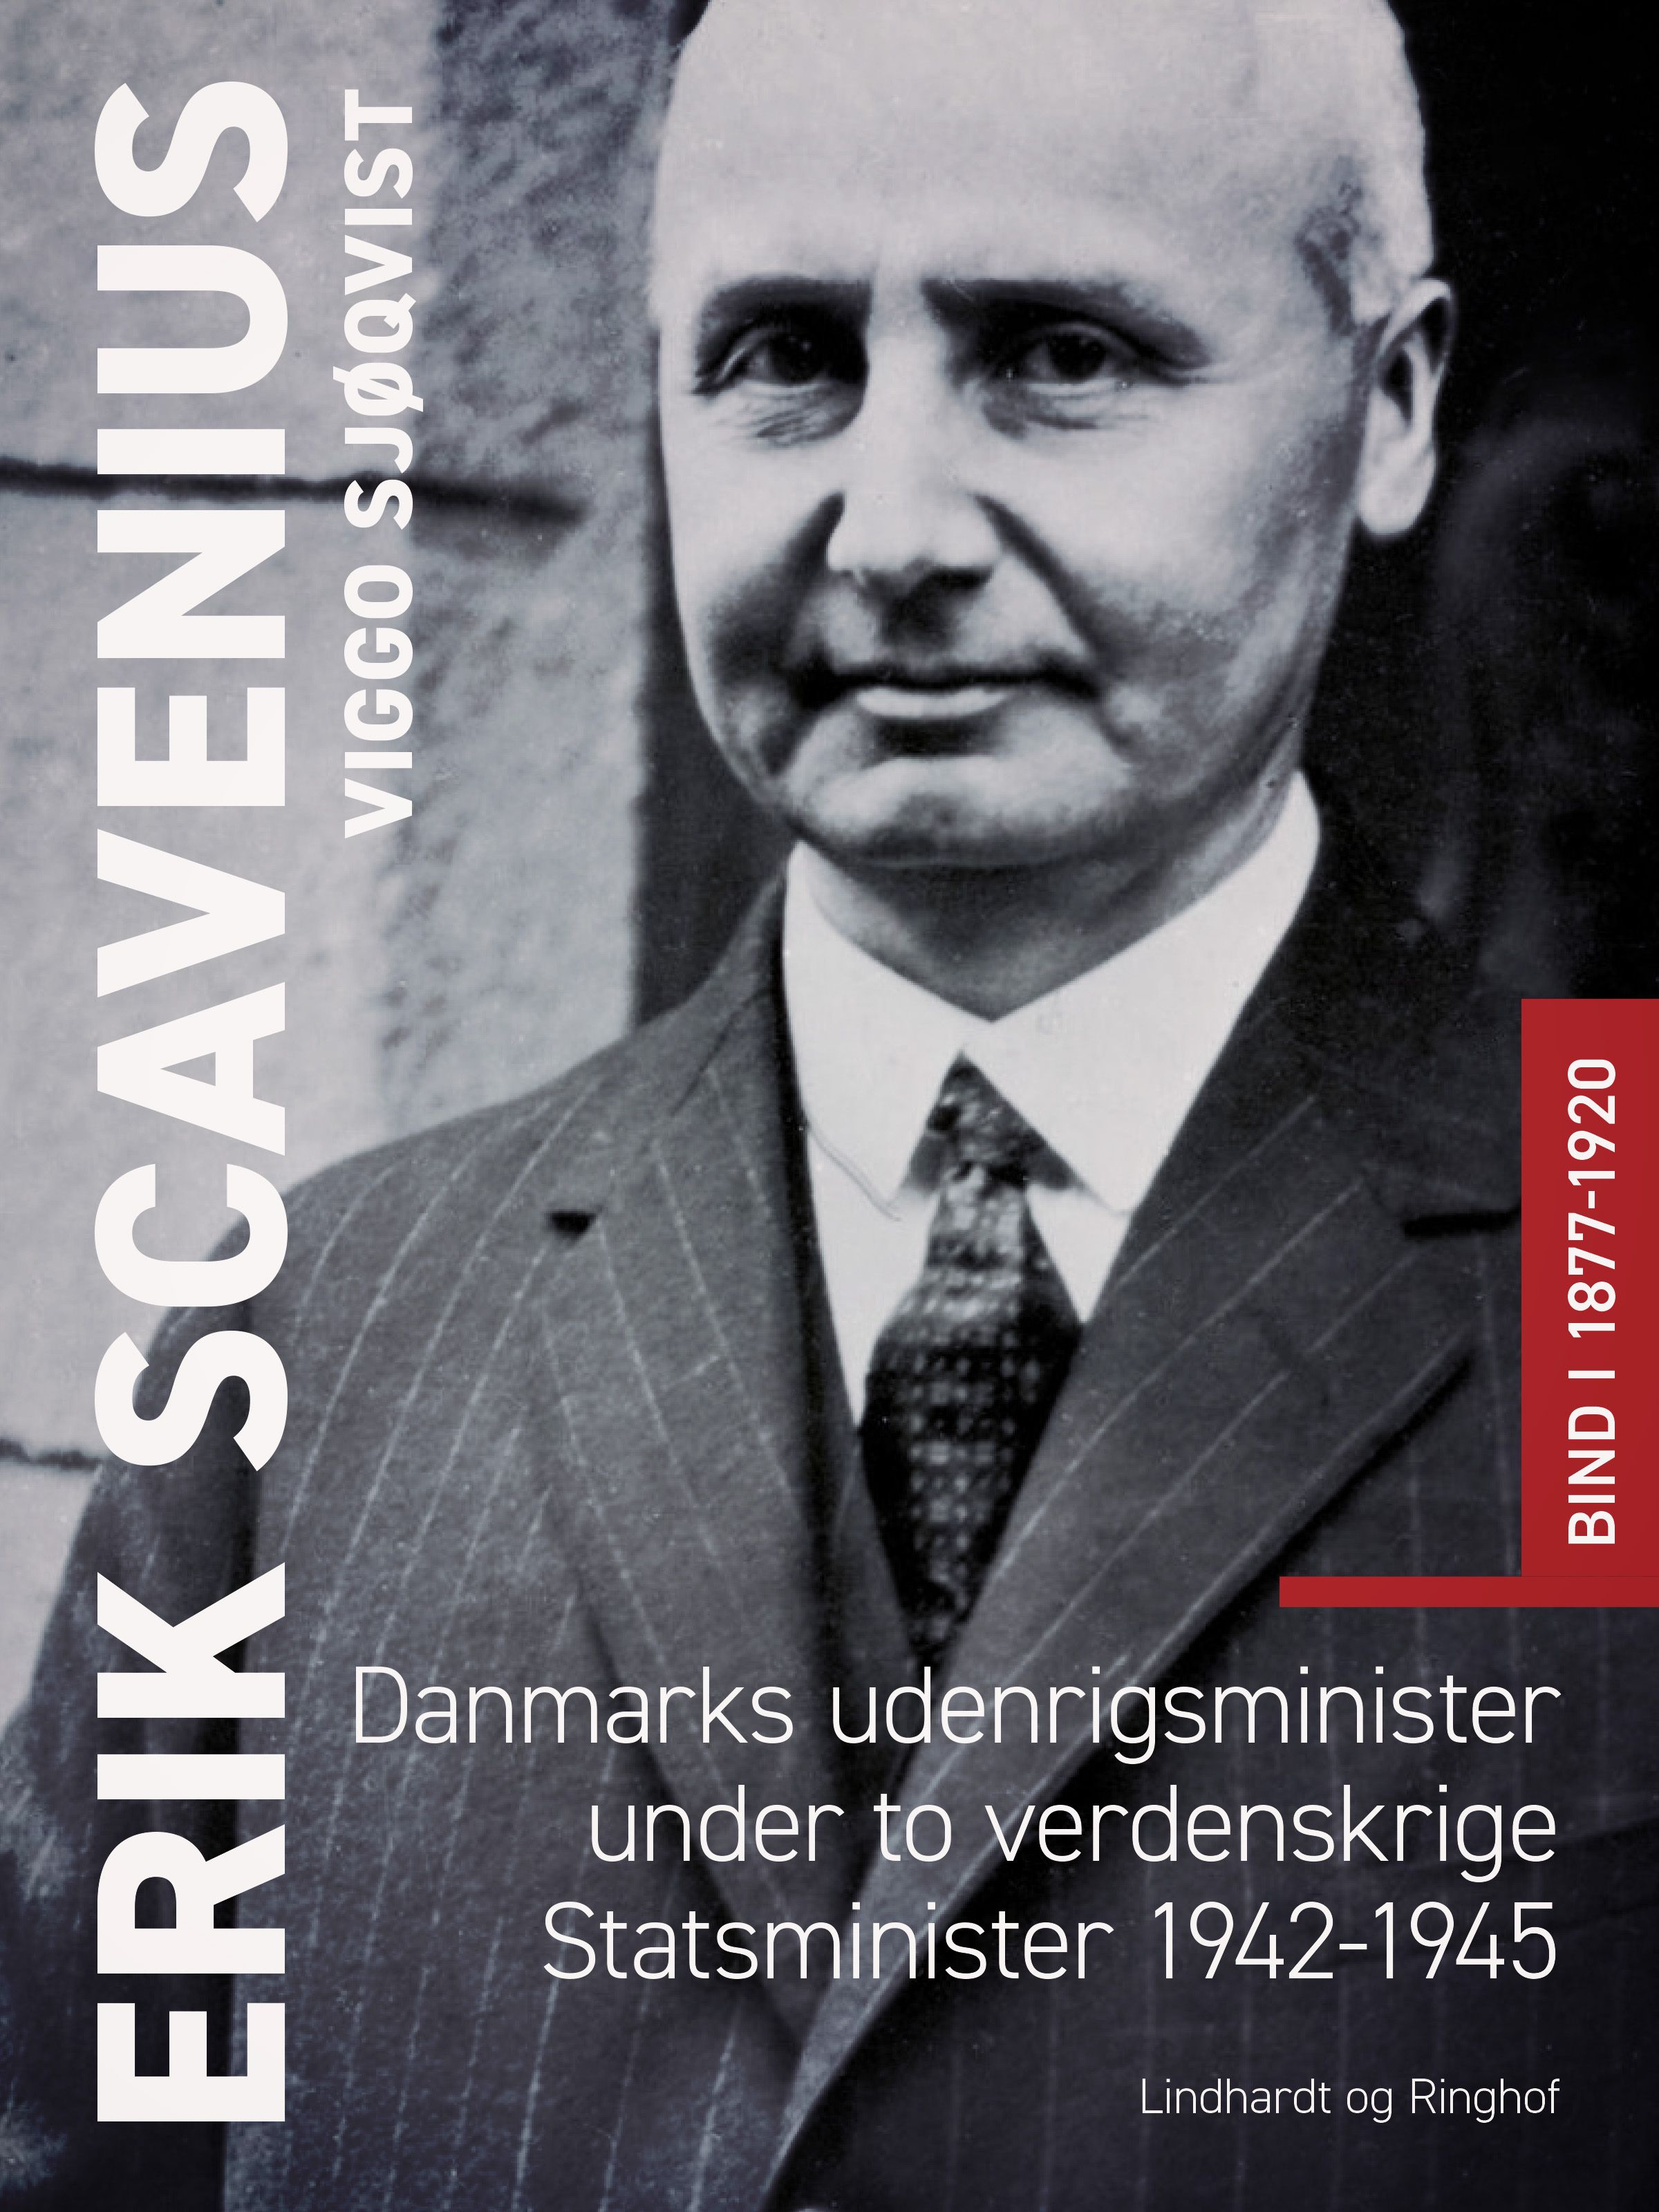 Erik Scavenius. Danmarks udenrigsminister under to verdenskrige. Statsminister 1942-1945. Bind I 1877-1920, eBook by Viggo Sjøqvist